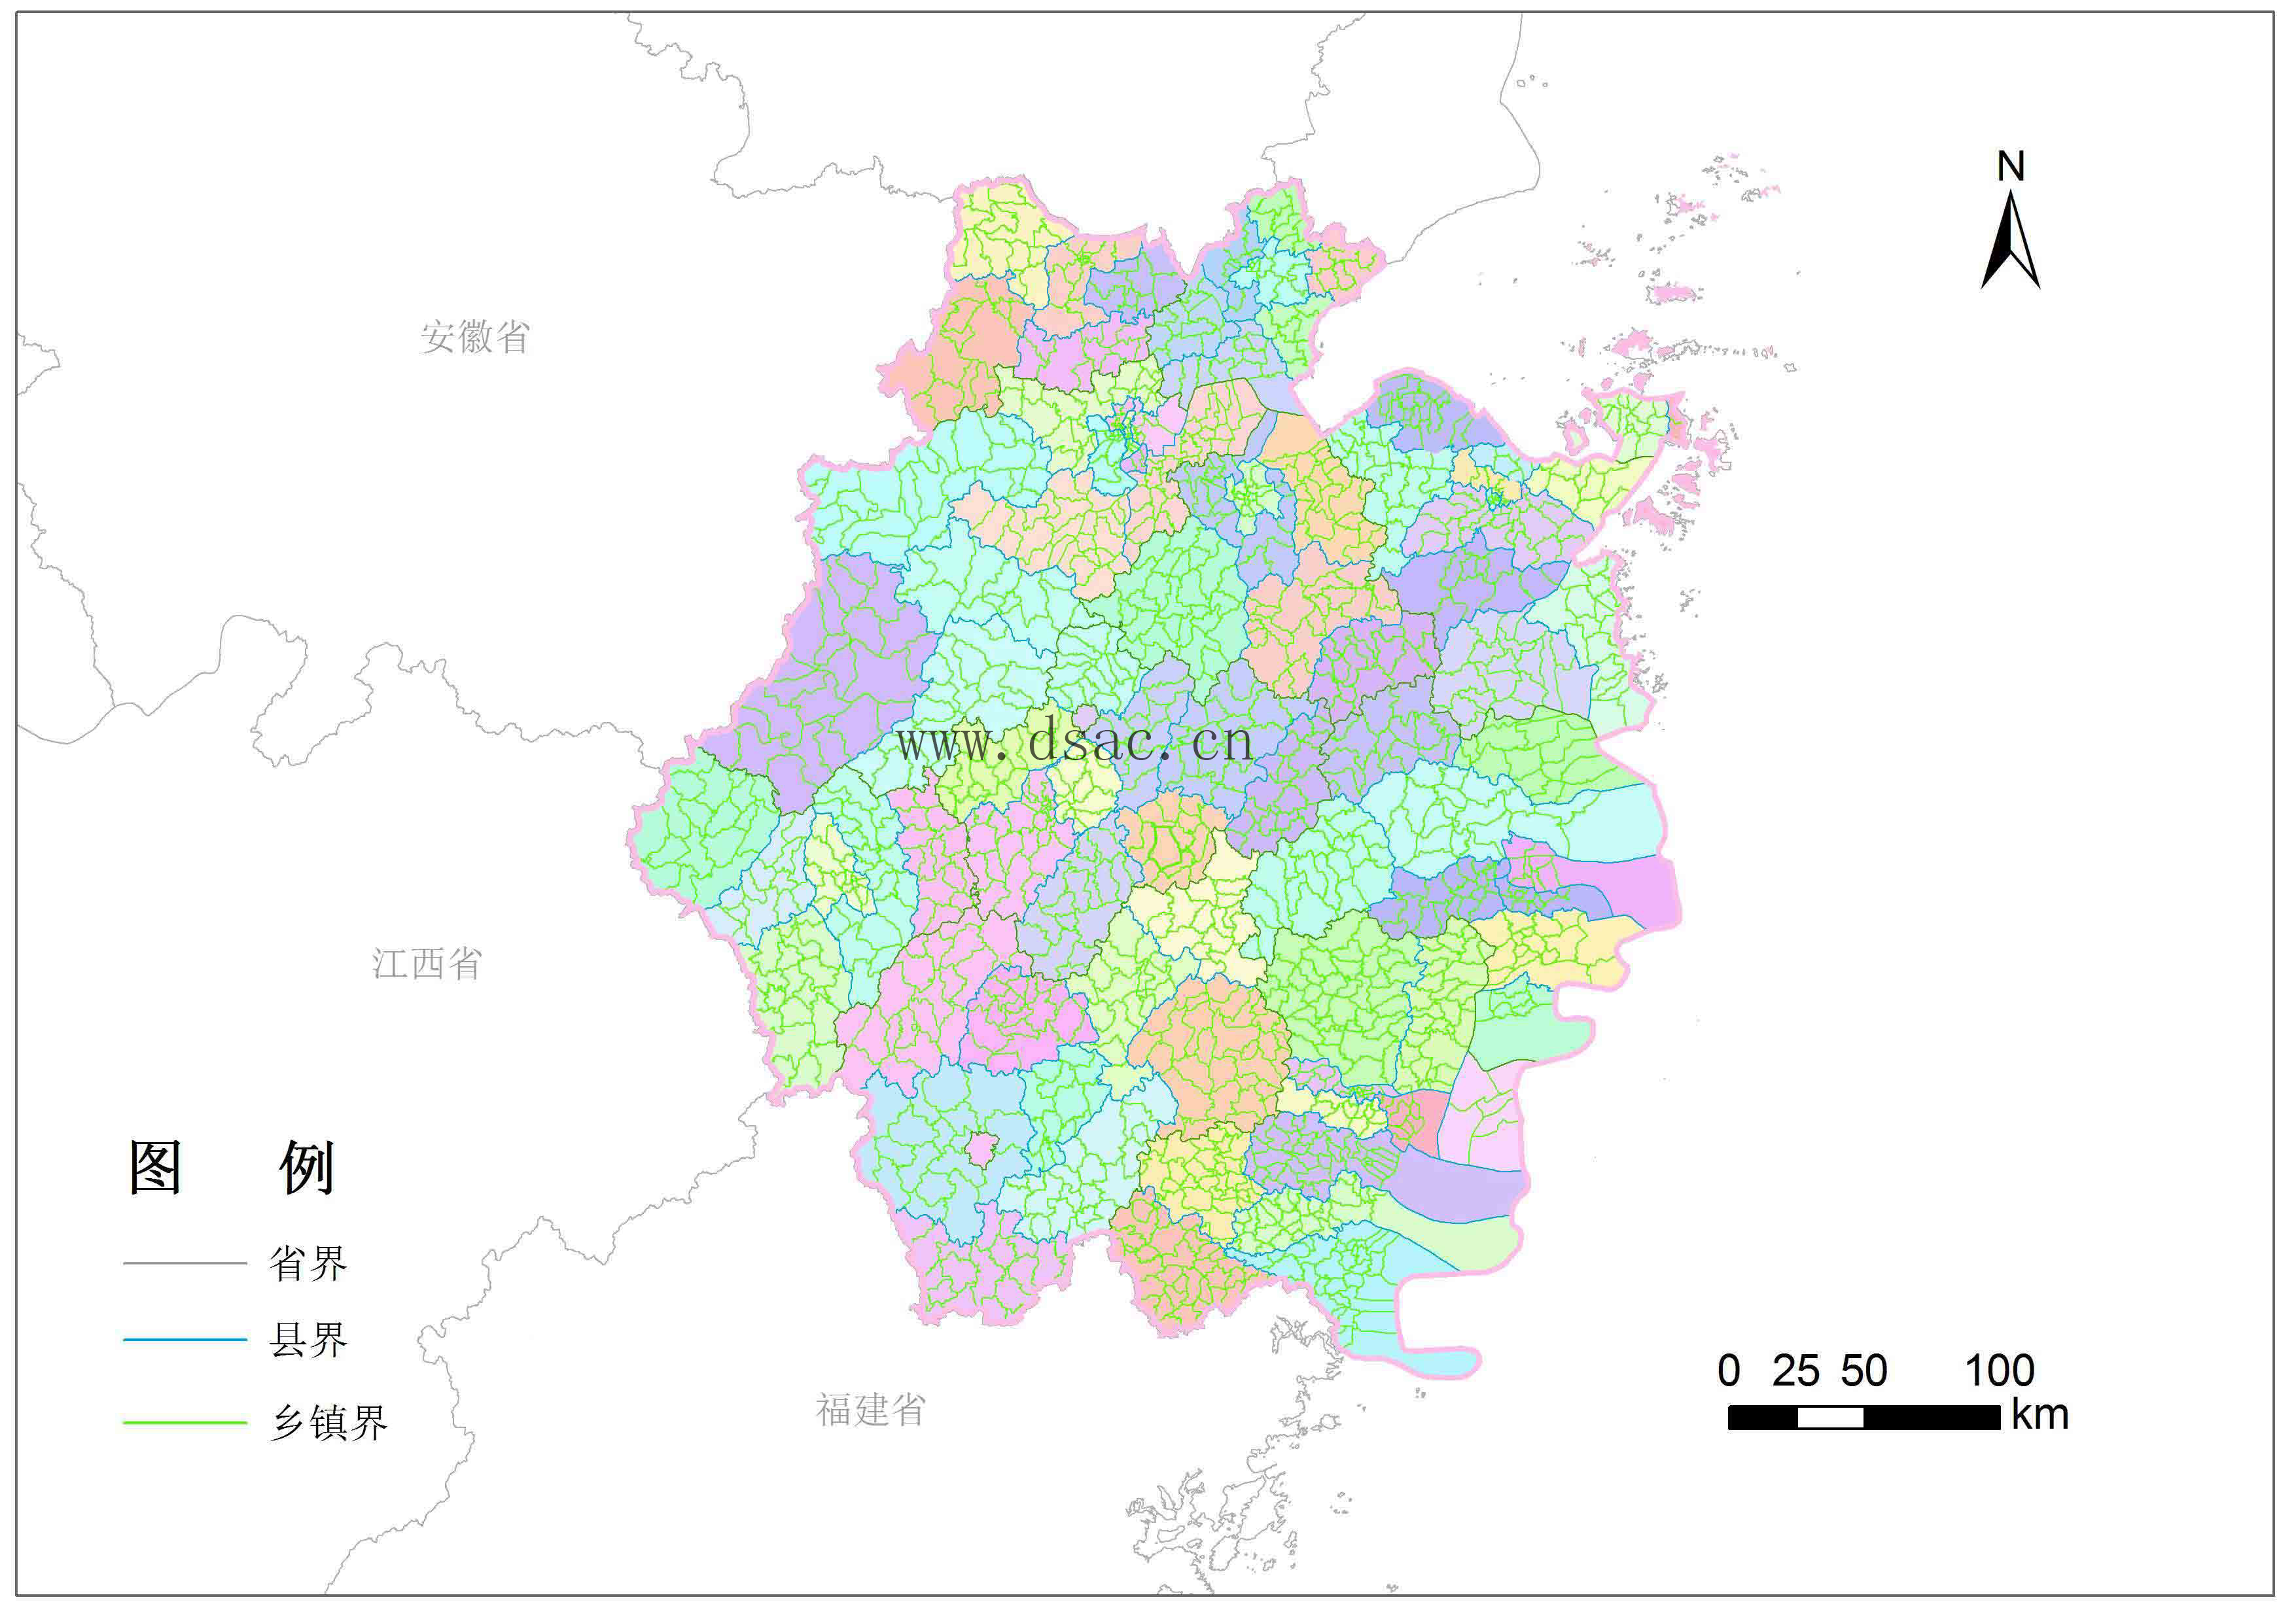 中国地理位置最好的城市你觉得是哪里？